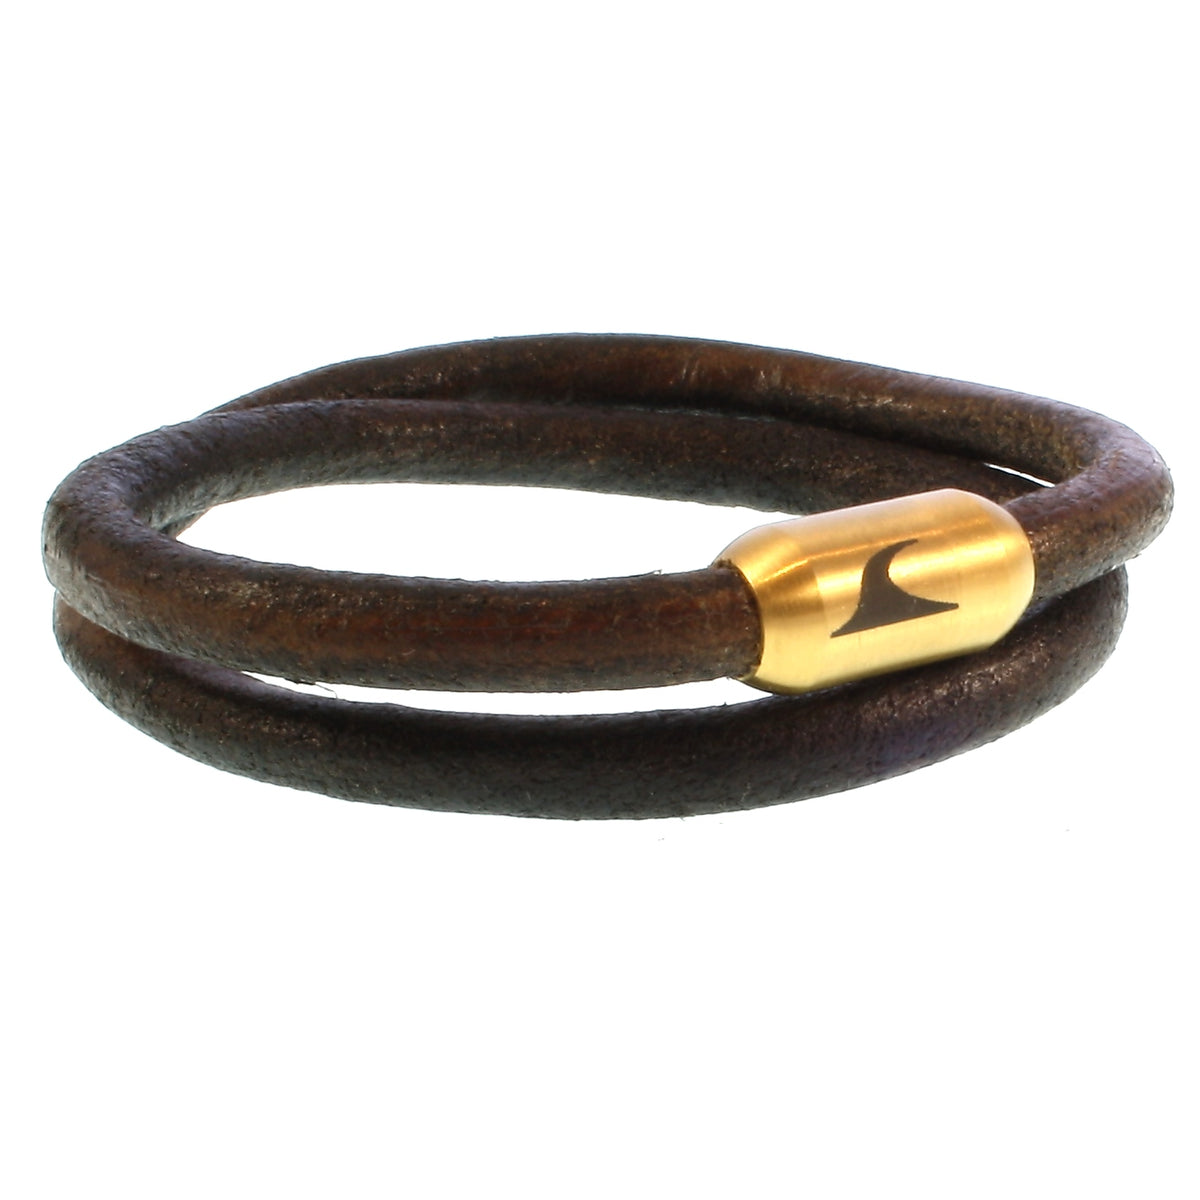 Herren-Leder-Armband-hawaii-braun-gold-massiv-Edelstahlverschluss-vorn-wavepirate-shop-r